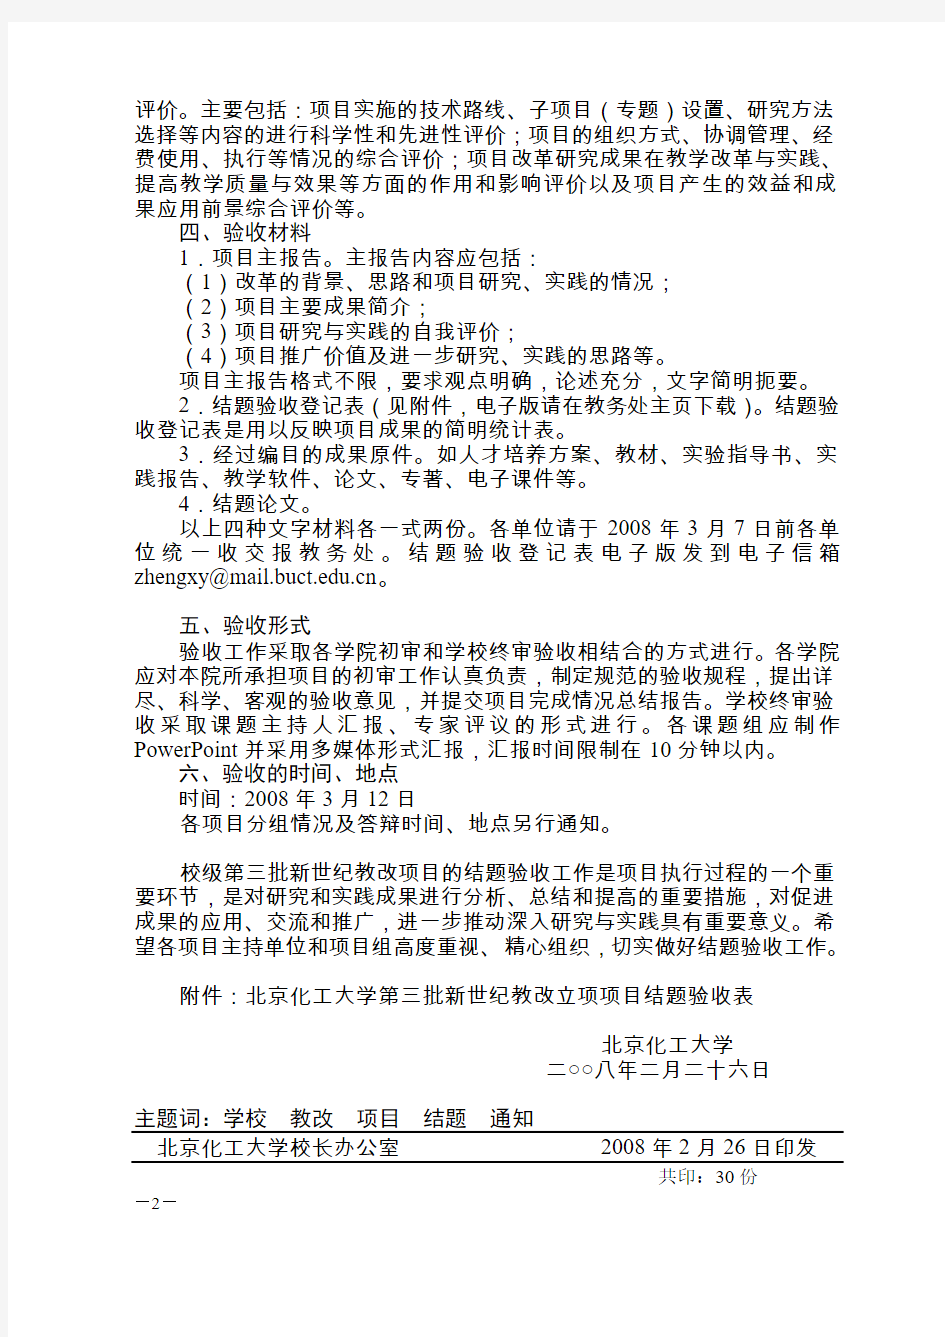 北京化工大学第三批新世纪教改立项项目结题验收表(精)